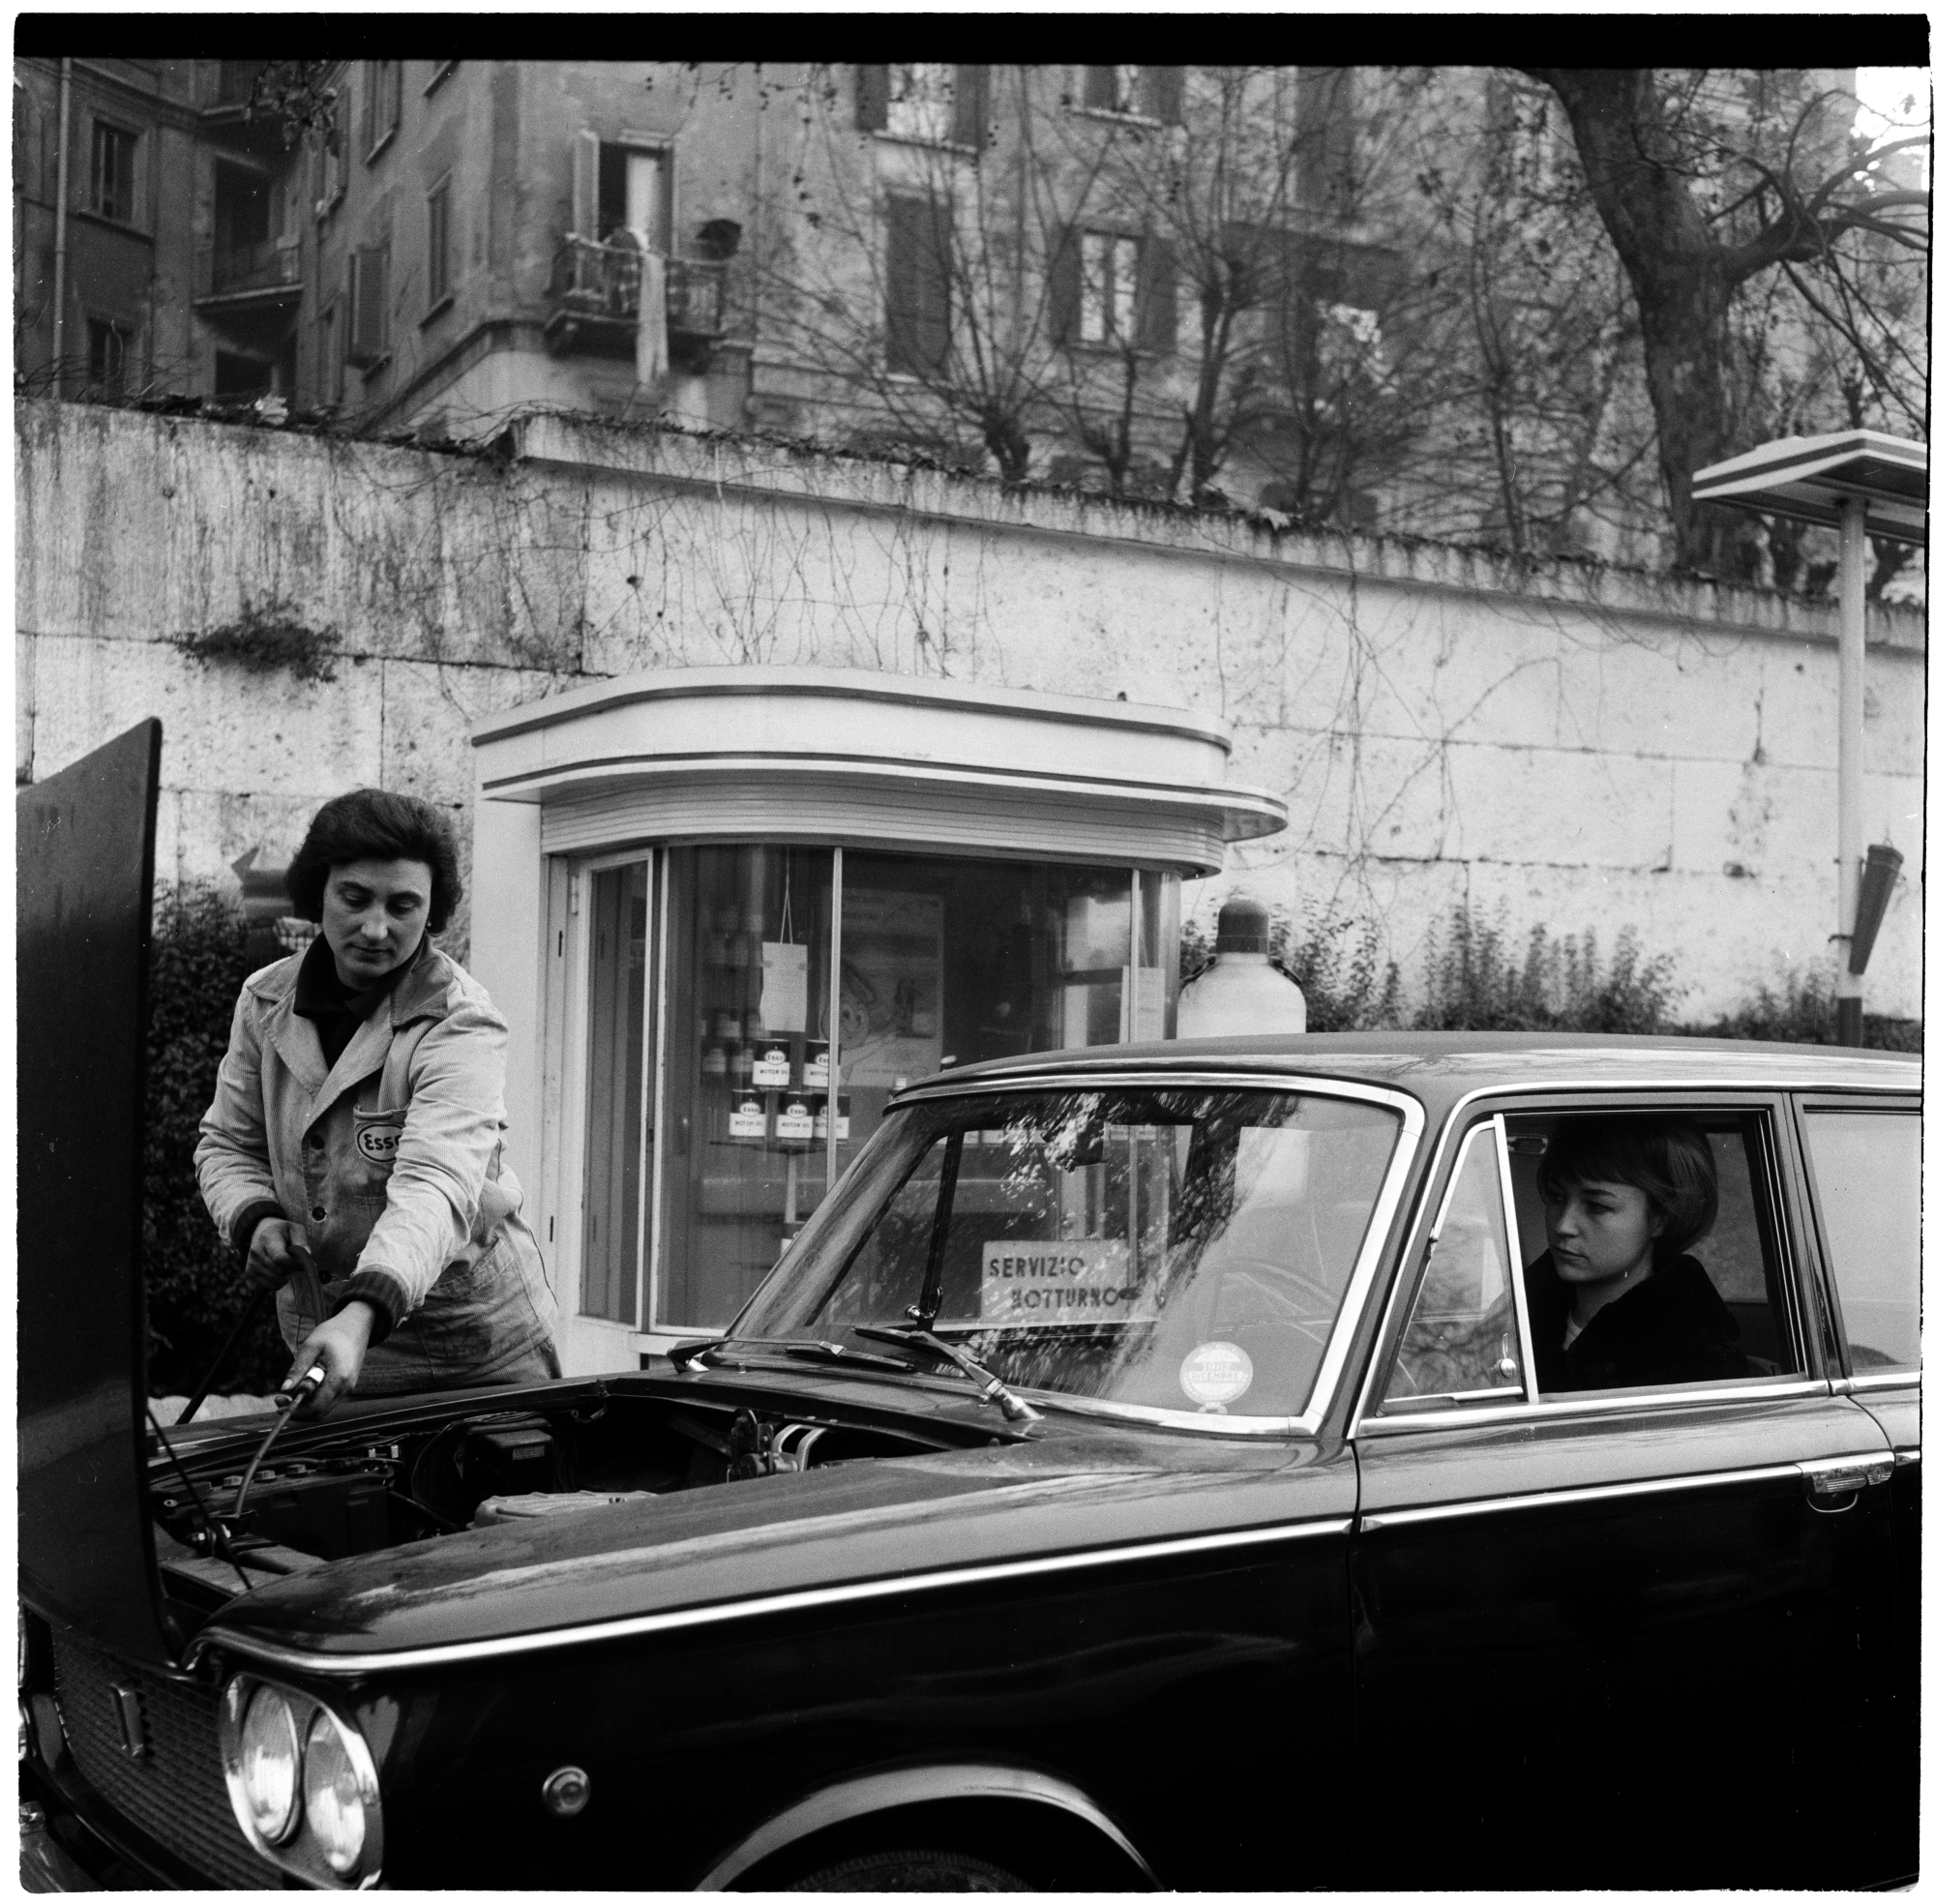  Benzinaia controlla il livello dell’olio a un'automobile guidata da una donna, Milano 3 novembre 1962 Fotografia di Sergio Cossu - Publifoto. Archivio Publifoto Intesa Sanpao